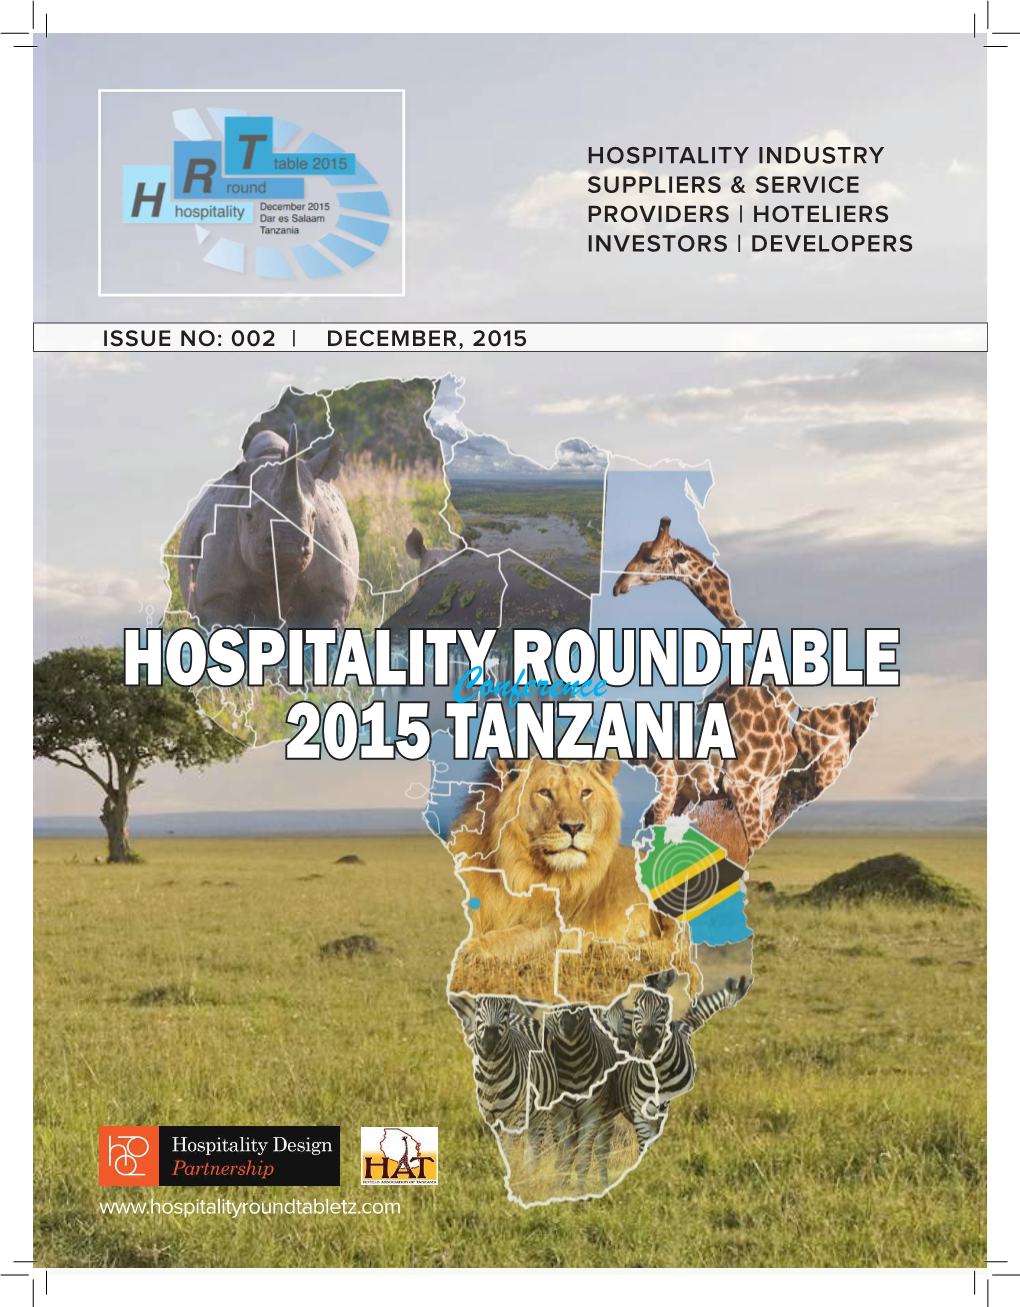 Hospitality Roundtable 2015 Tanzania